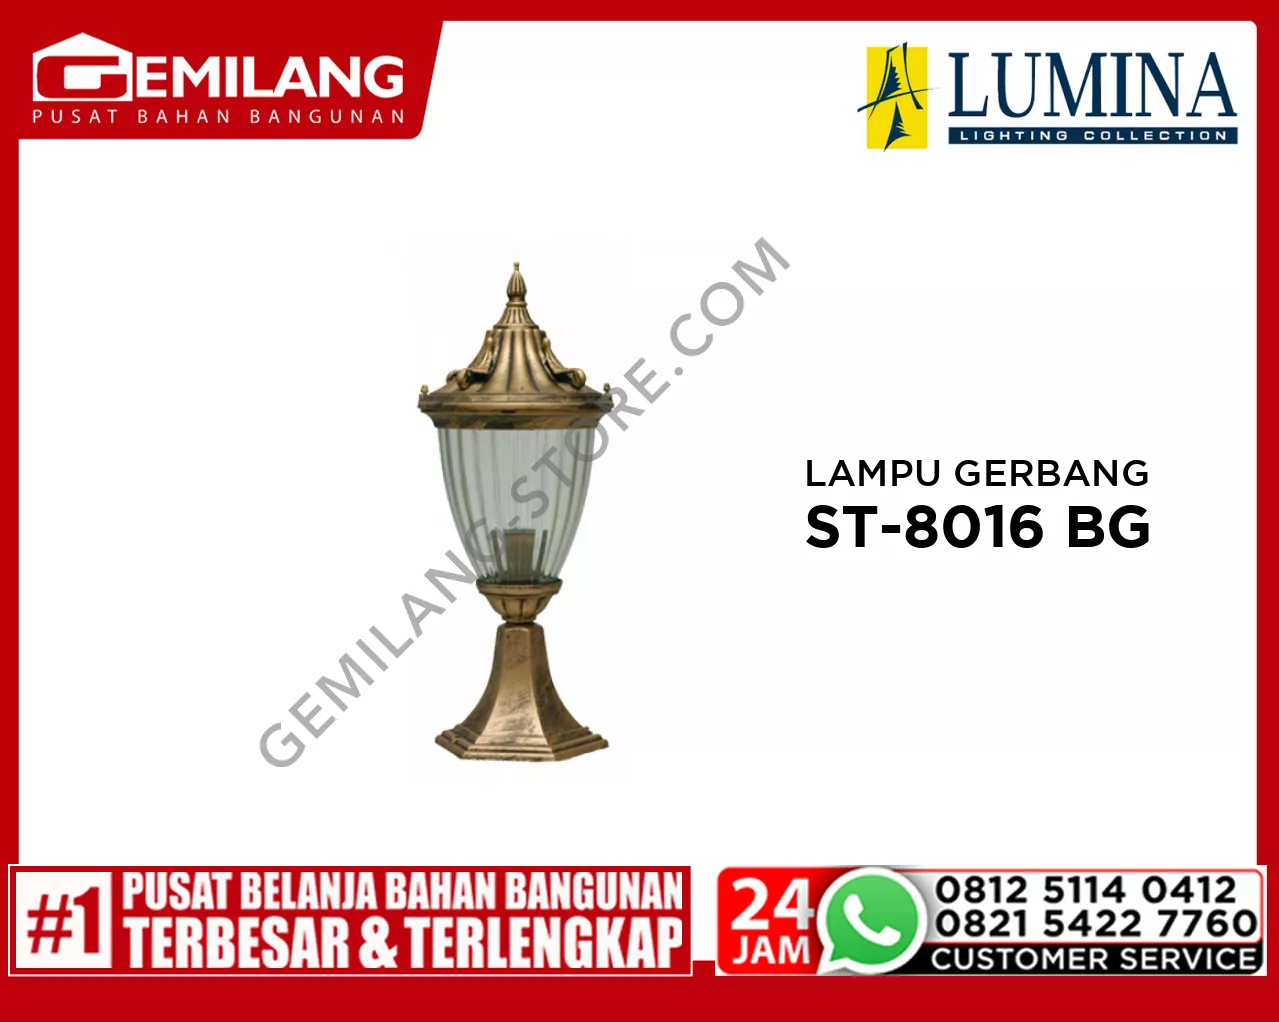 LAMPU GERBANG ST-8016 BG